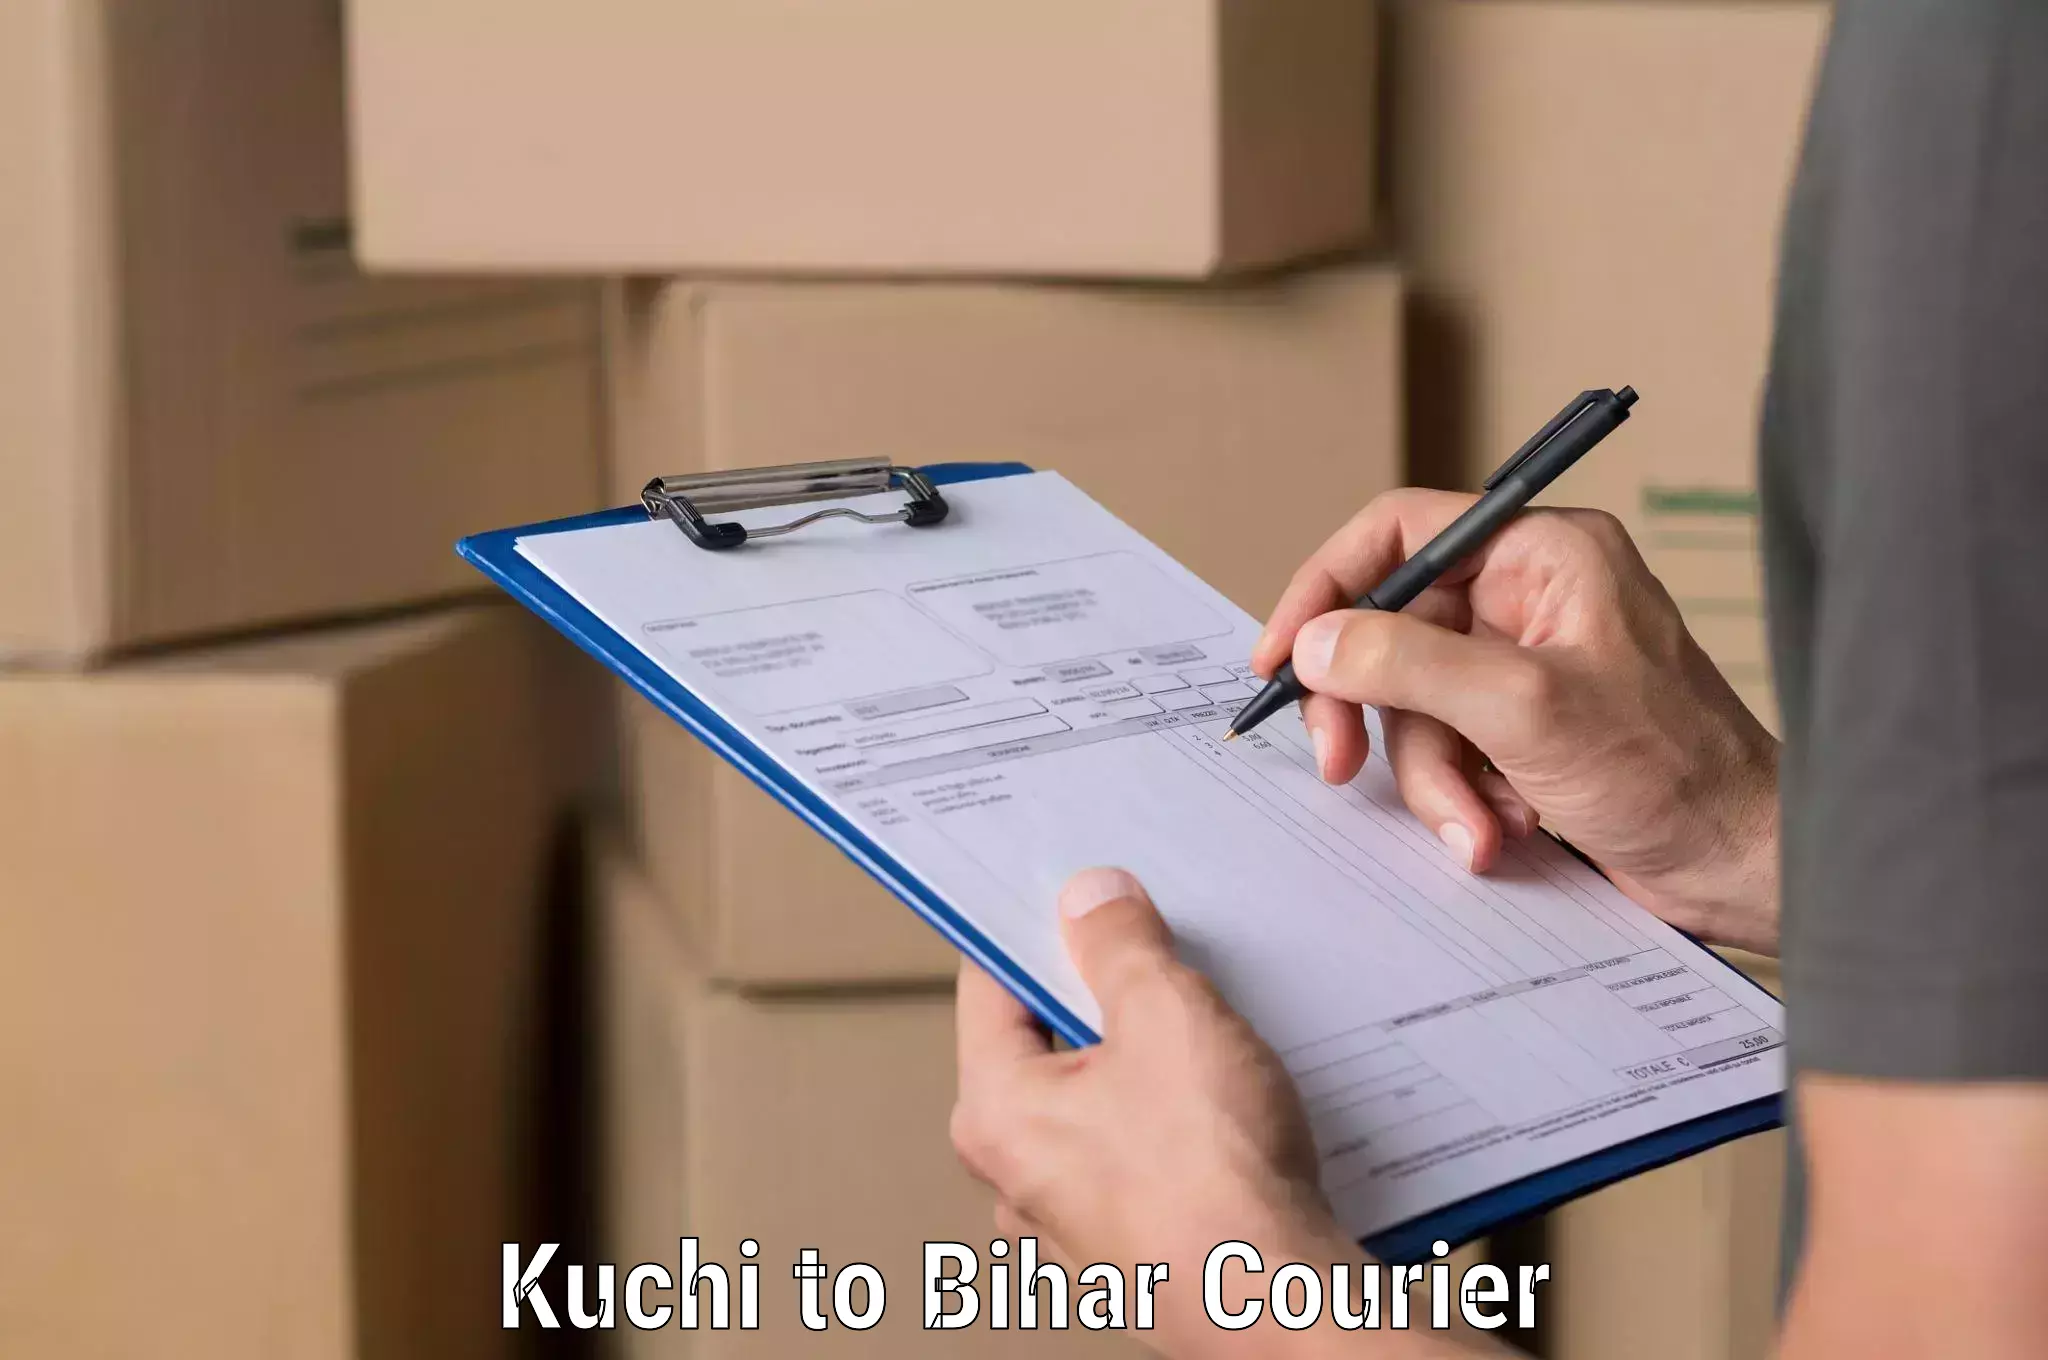 Next-day freight services Kuchi to Katihar